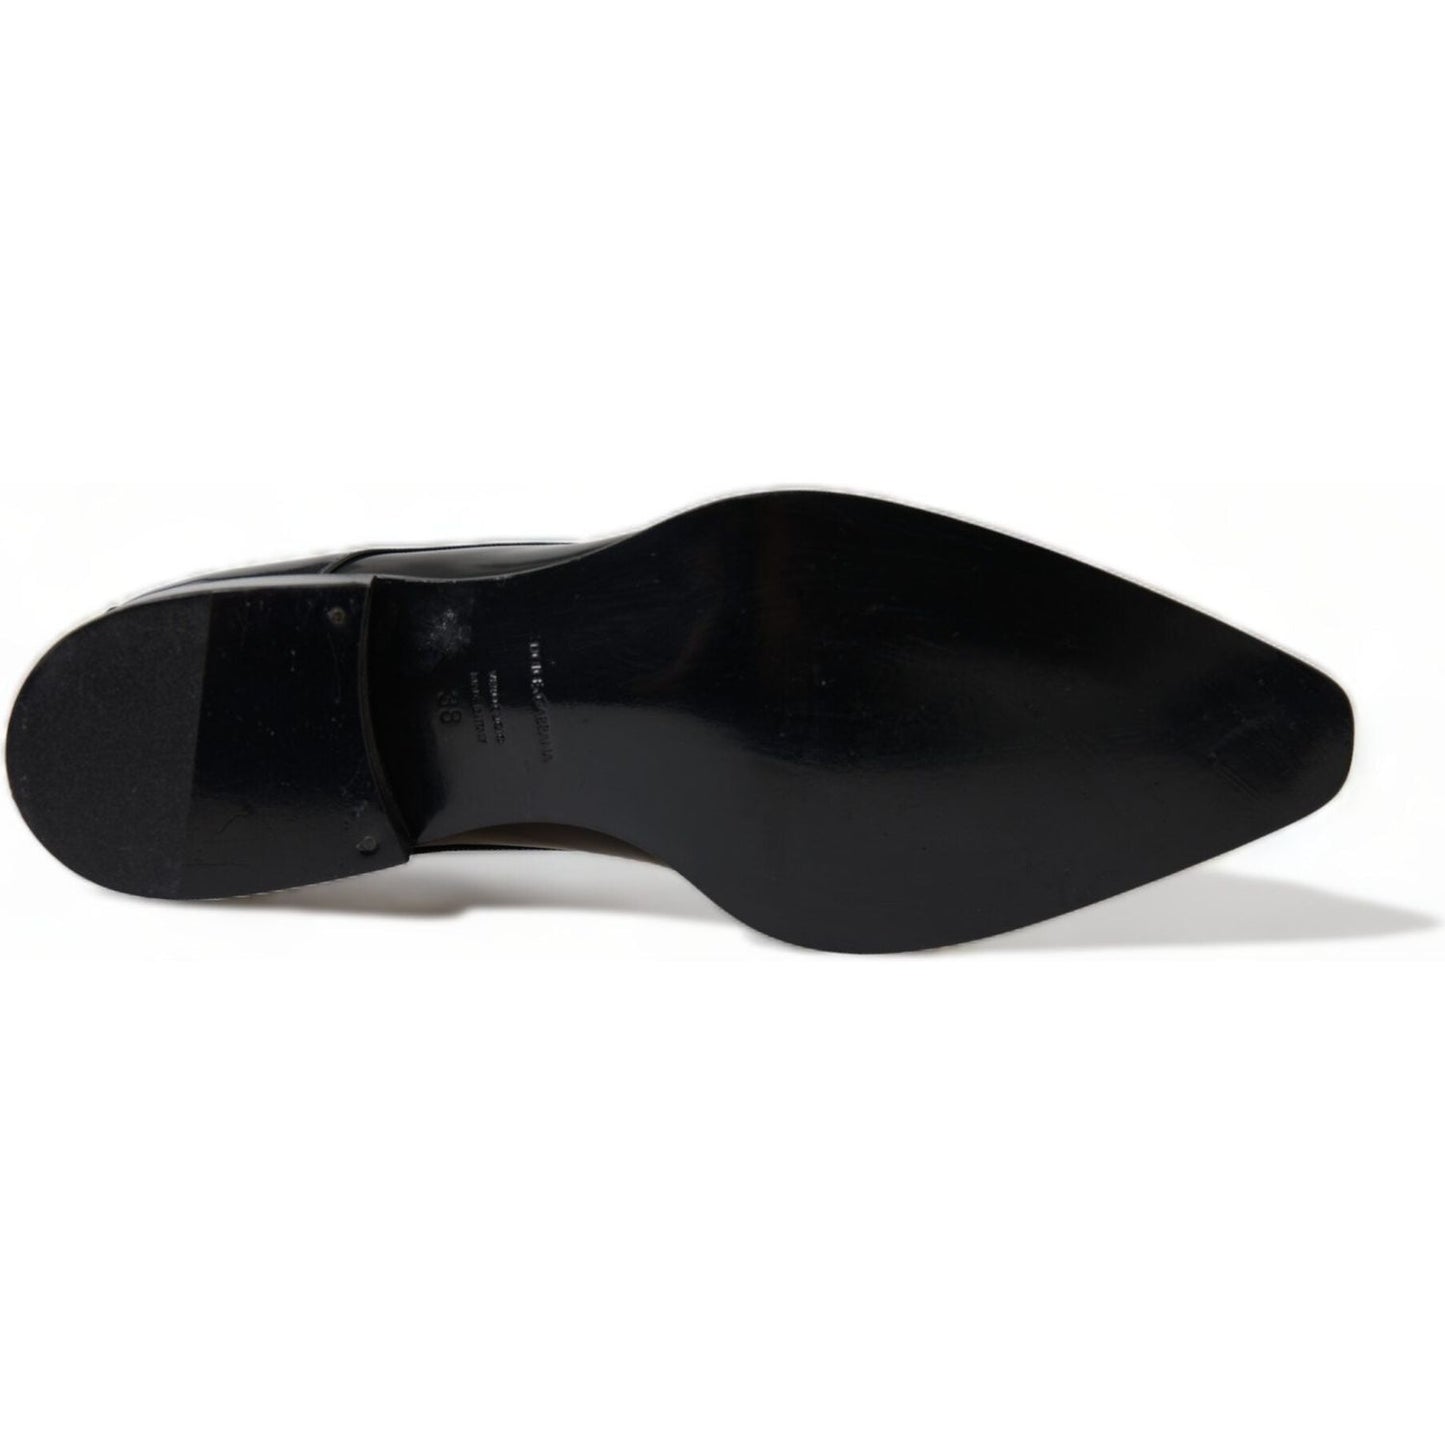 Dolce & Gabbana Elegant Black Leather Formal Flats black-leather-lace-up-formal-flats-shoes